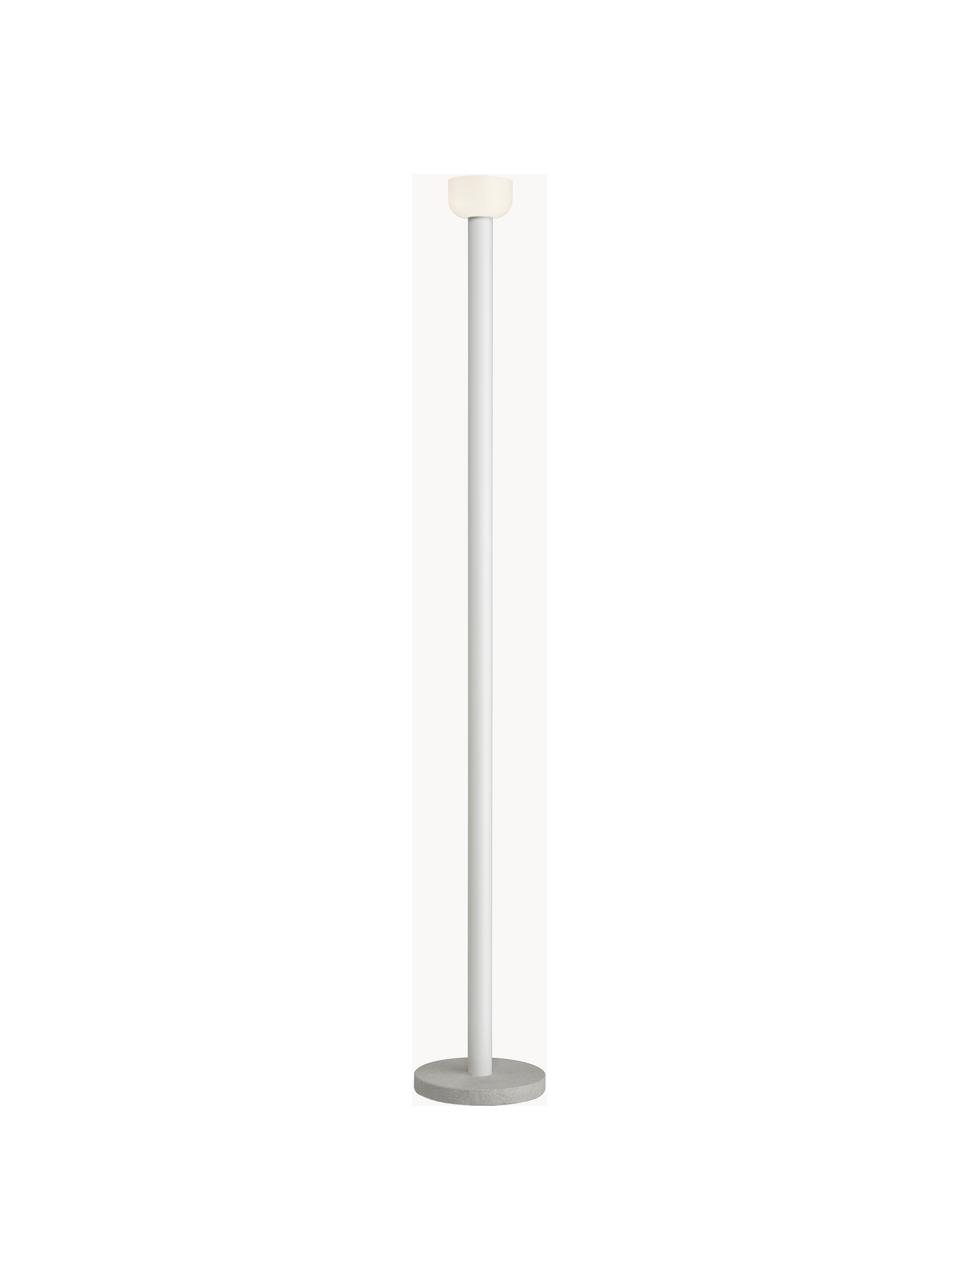 Grote dimbare LED vloerlamp Bellhop, Lampenkap: glas, Lampvoet: beton, Grijs, H 178 cm